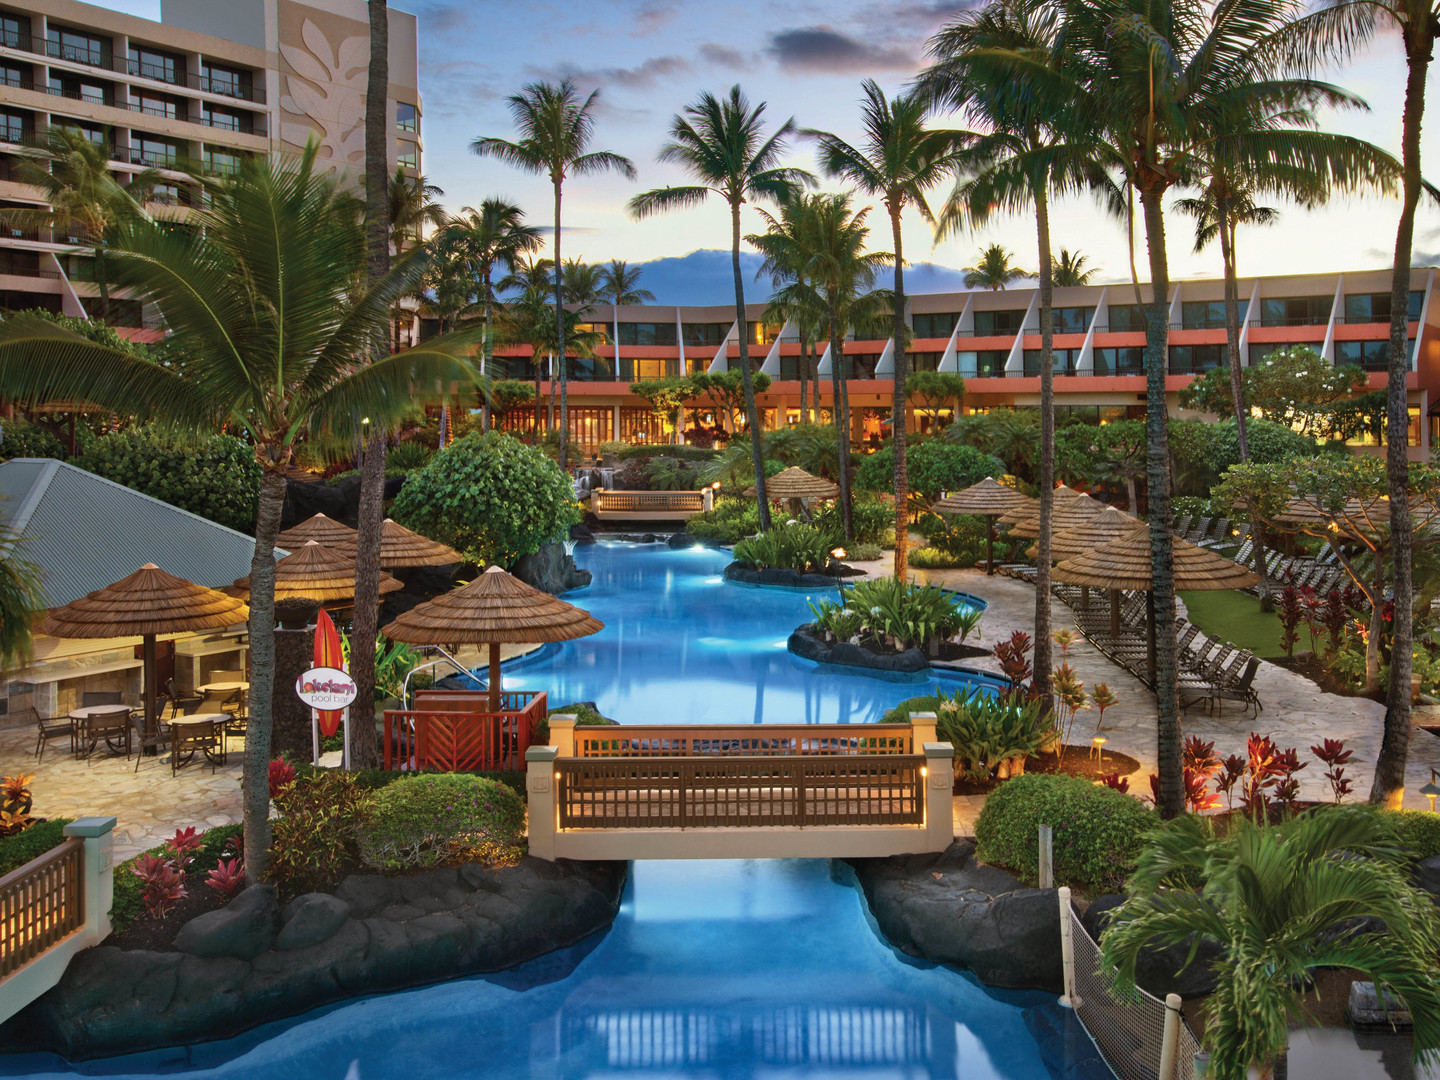 Marriott's Maui Ocean Club - Molokai, Maui, and Lanai Towers Super Pool. Marriott's Maui Ocean Club - Molokai, Maui, and Lanai Towers is located in Lāhainā, Maui, Hawai‘i United States.